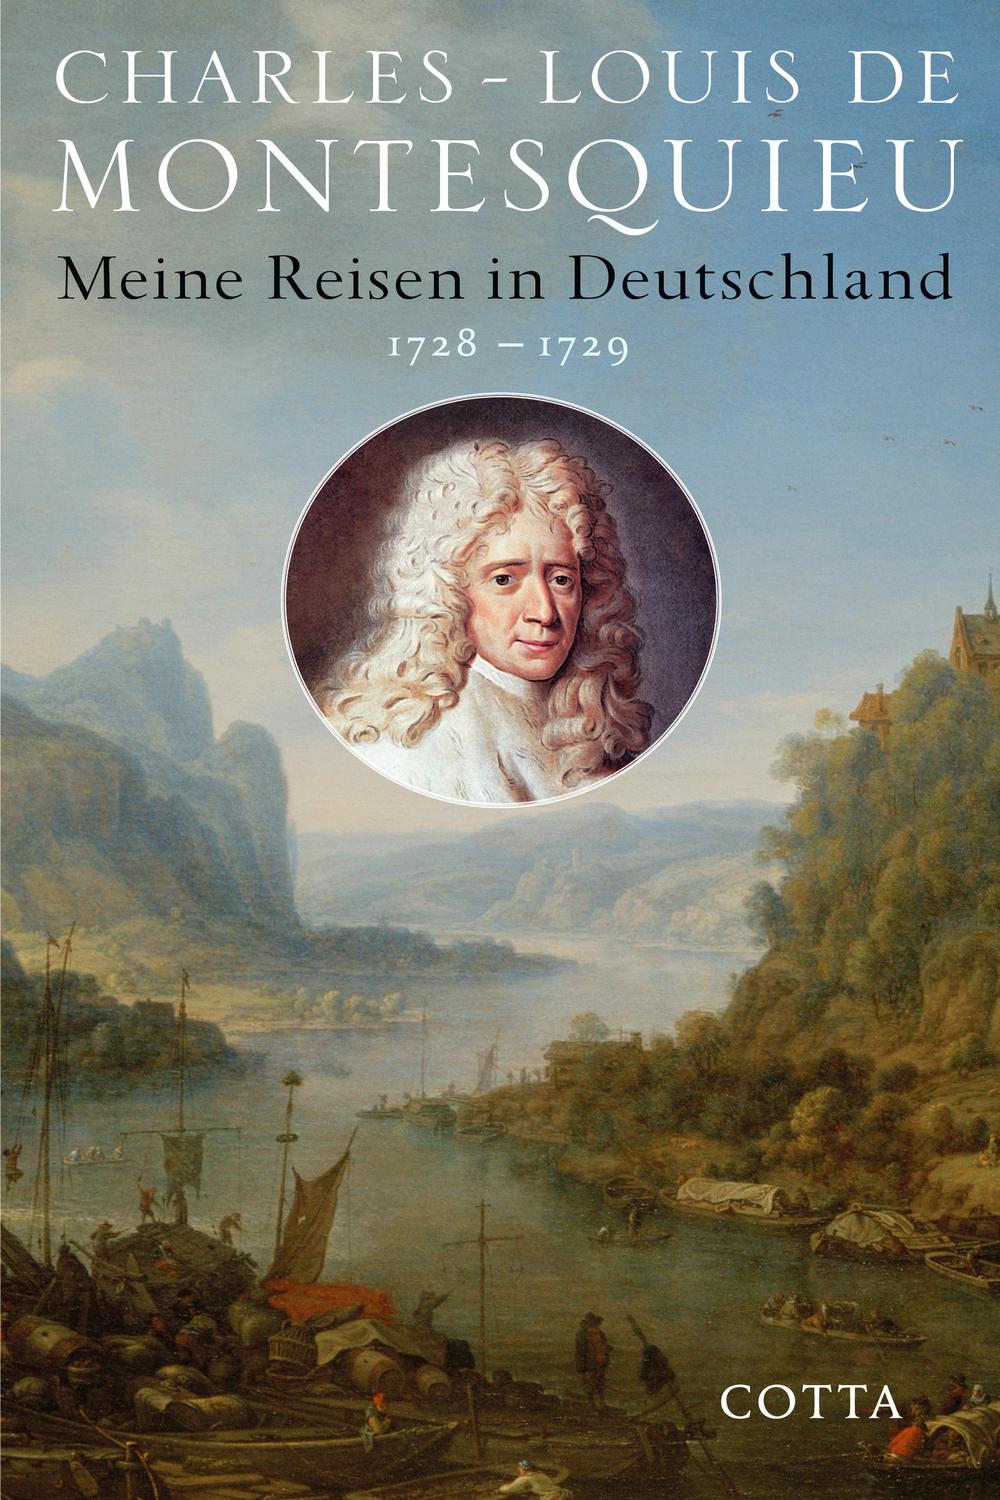 Meine Reisen in Deutschland 1728 - 1729 - Charles-Louis de Montesquieu